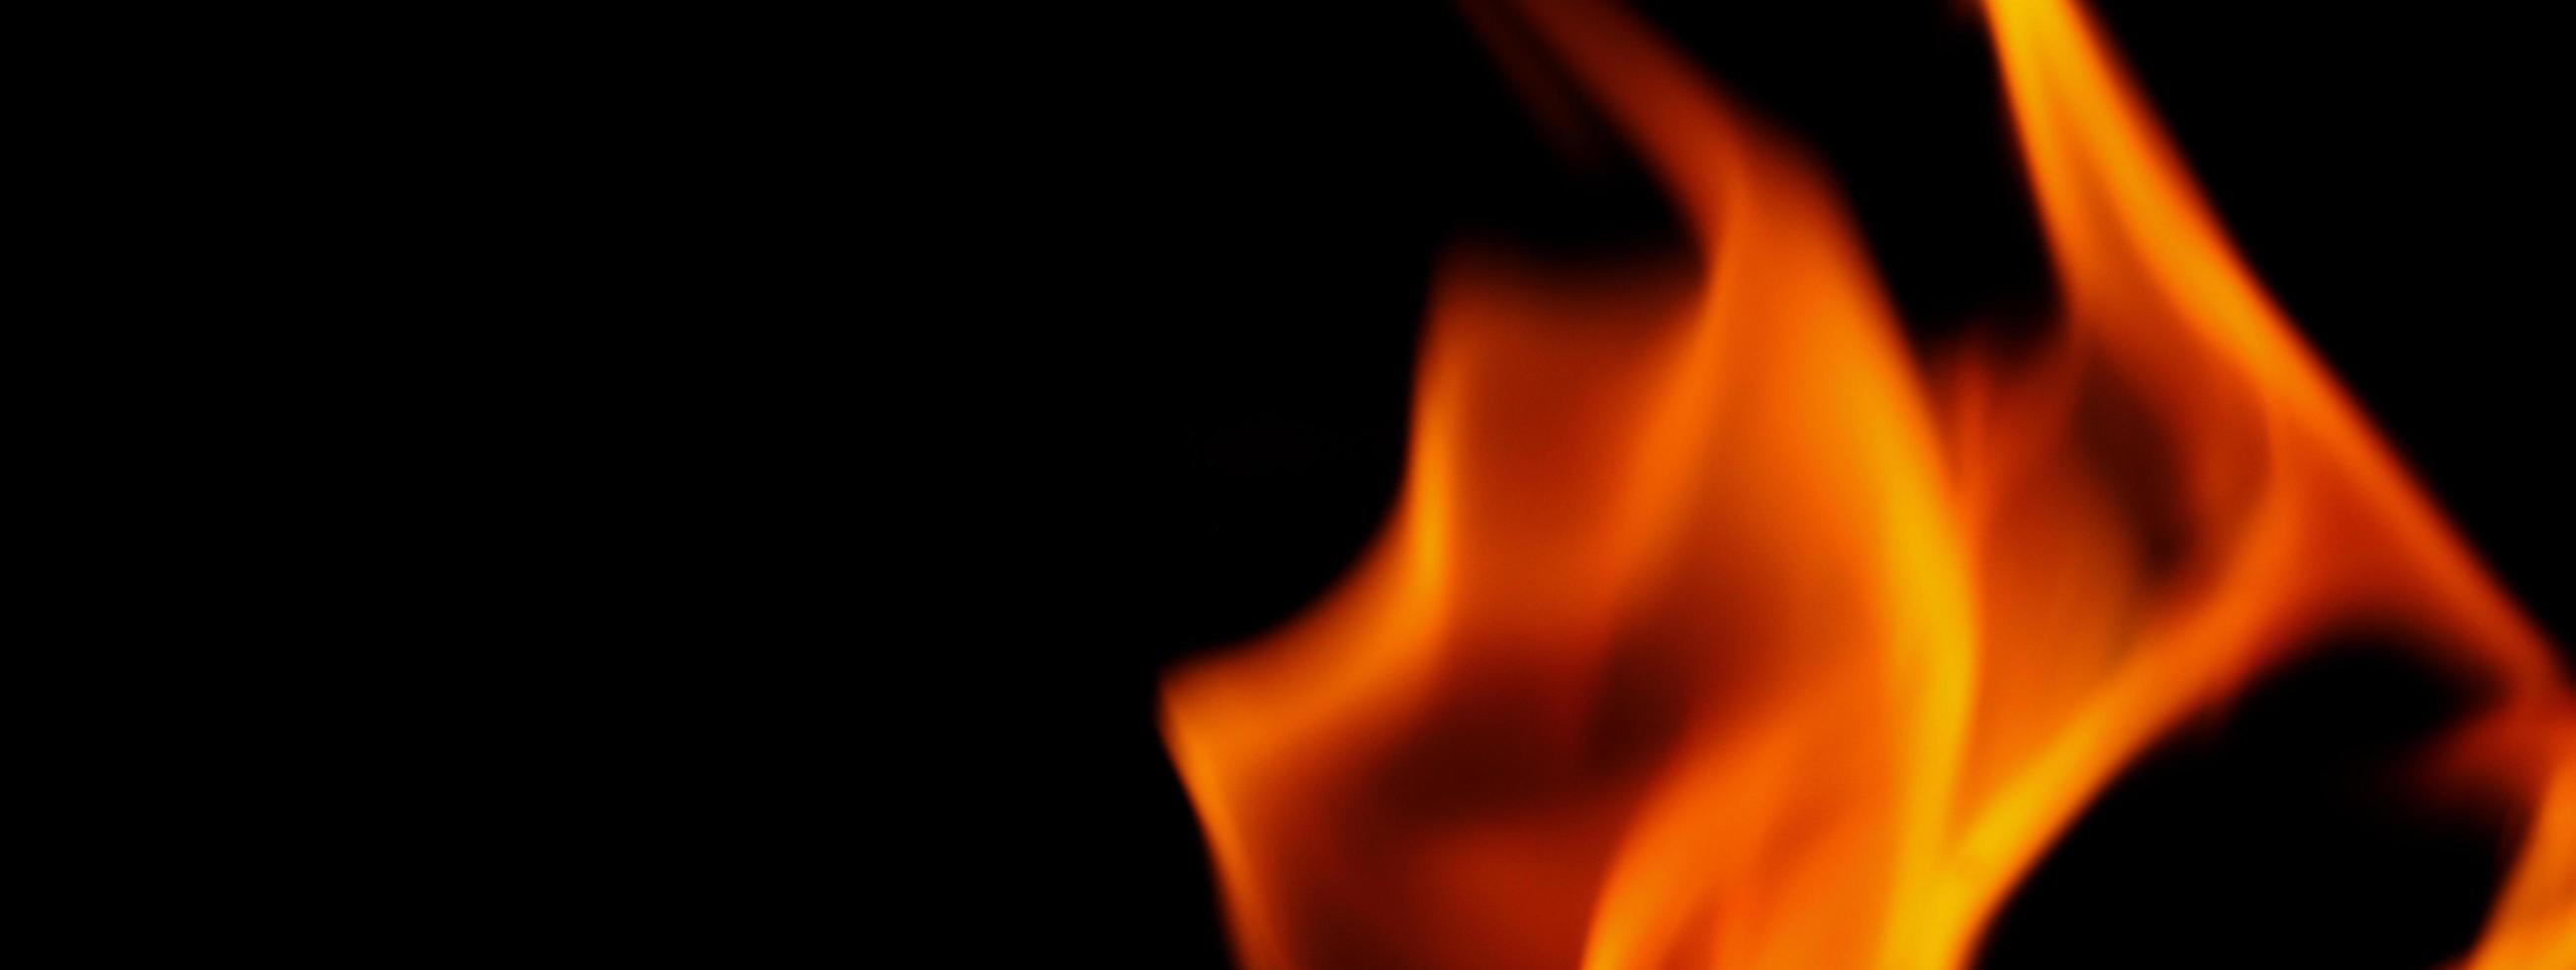 sfondo di fuoco. fiamma ardente astratta e sfondo nero. foto